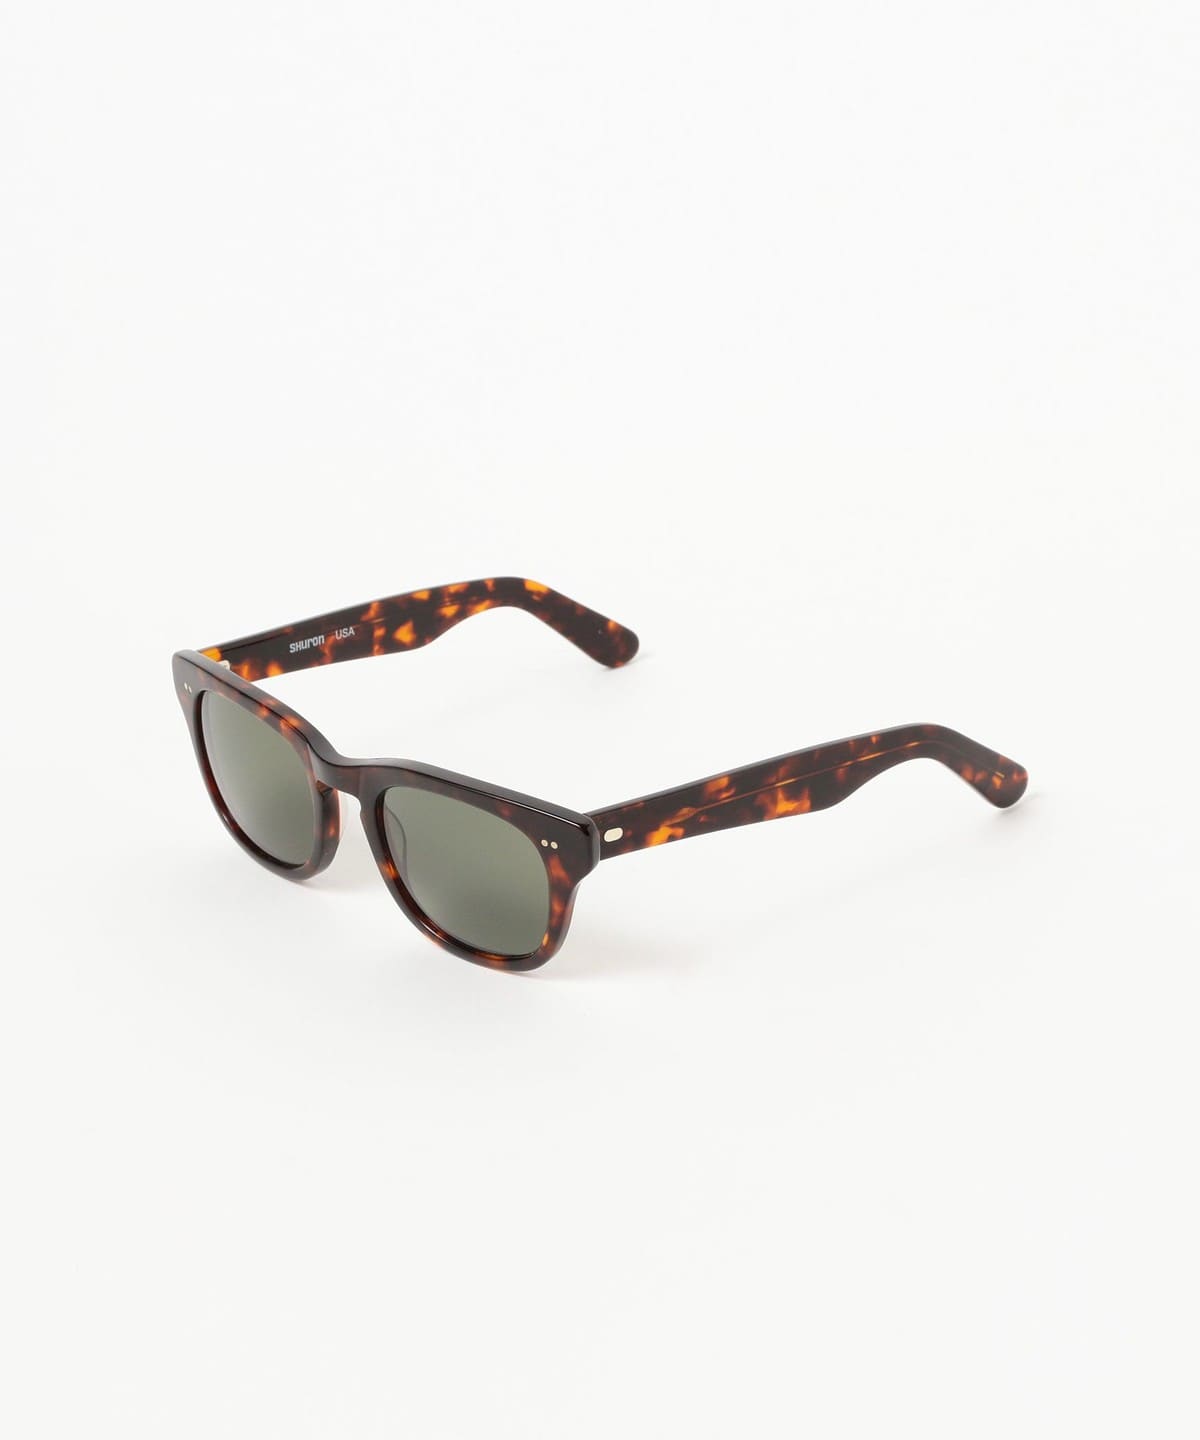 BEAMS BOY BEAMS BOY SHURON / SIDEWINDER (fashion goods sunglasses ...